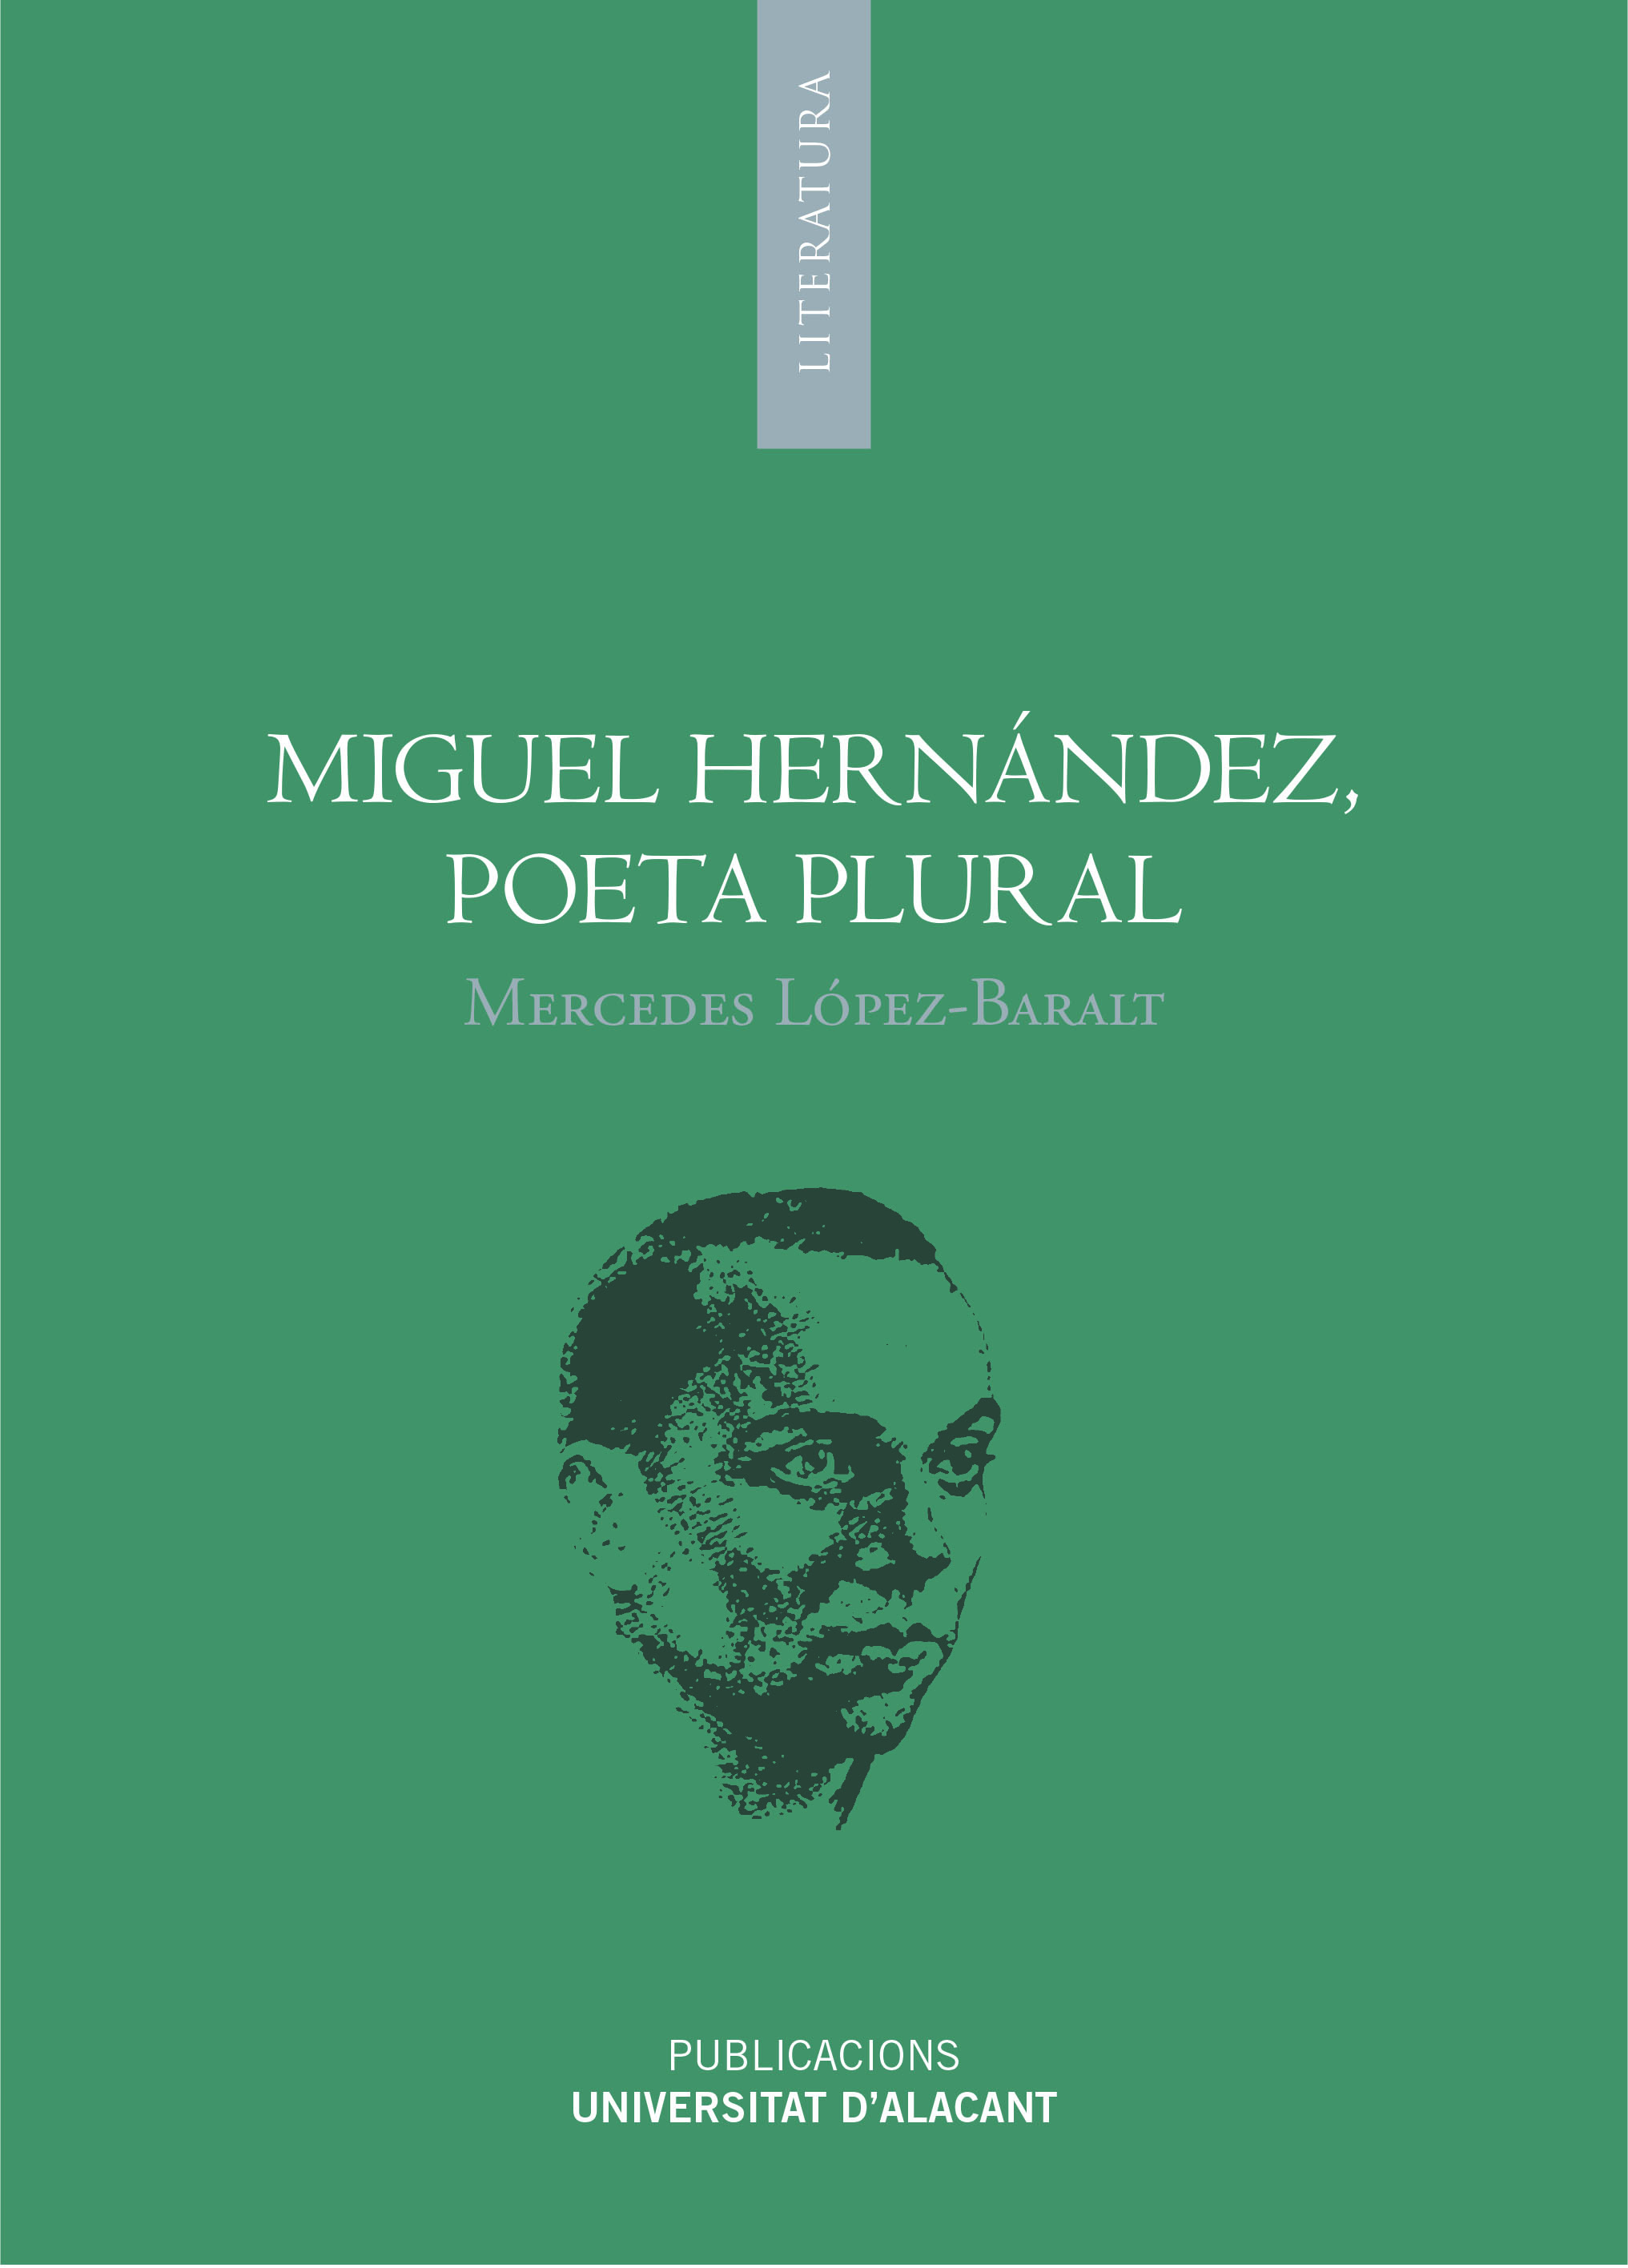 Miguel Hernández, poeta plural